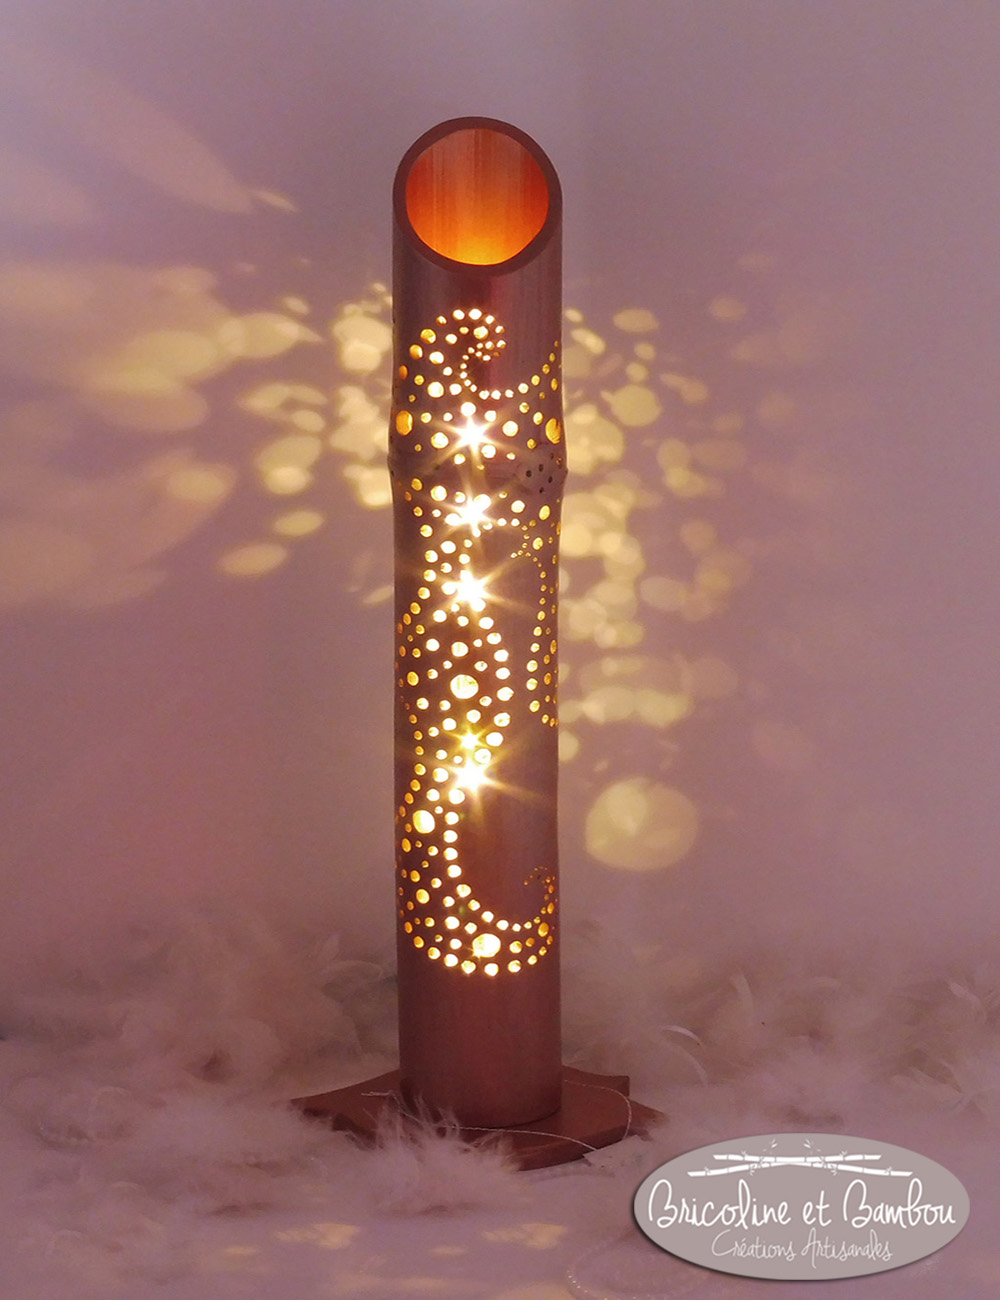 Lampe Bambou Joie w.jpg